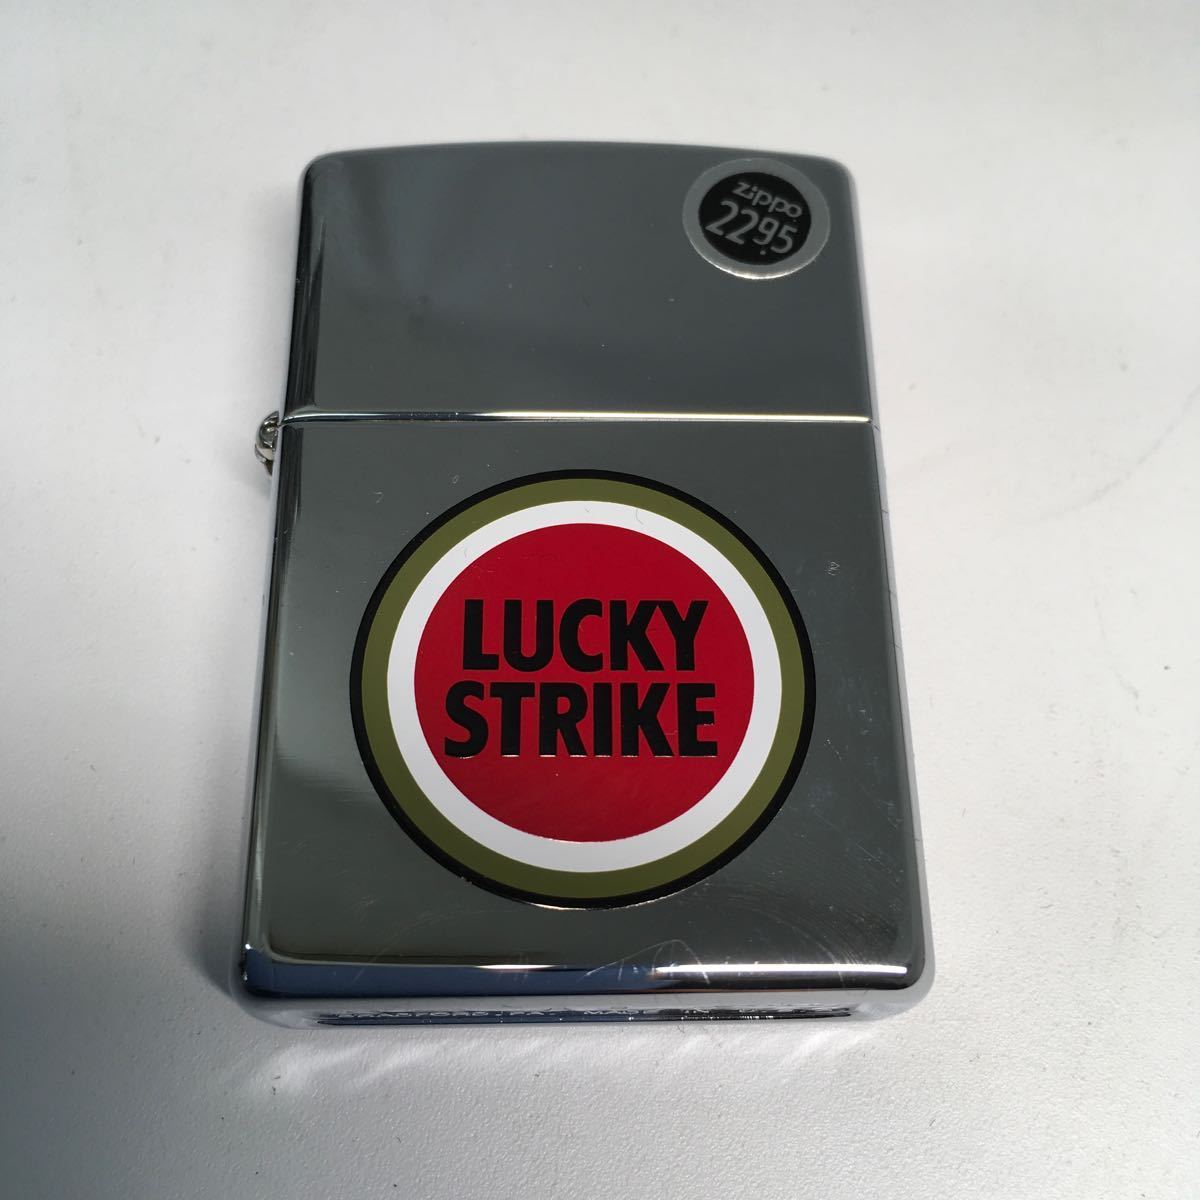 【未使用品】Zippoジッポー LUCKY STRIKE ラッキーストライク Made in U.S.A. 喫煙具 タバコ ZIPPO 【IK-00539】_画像2